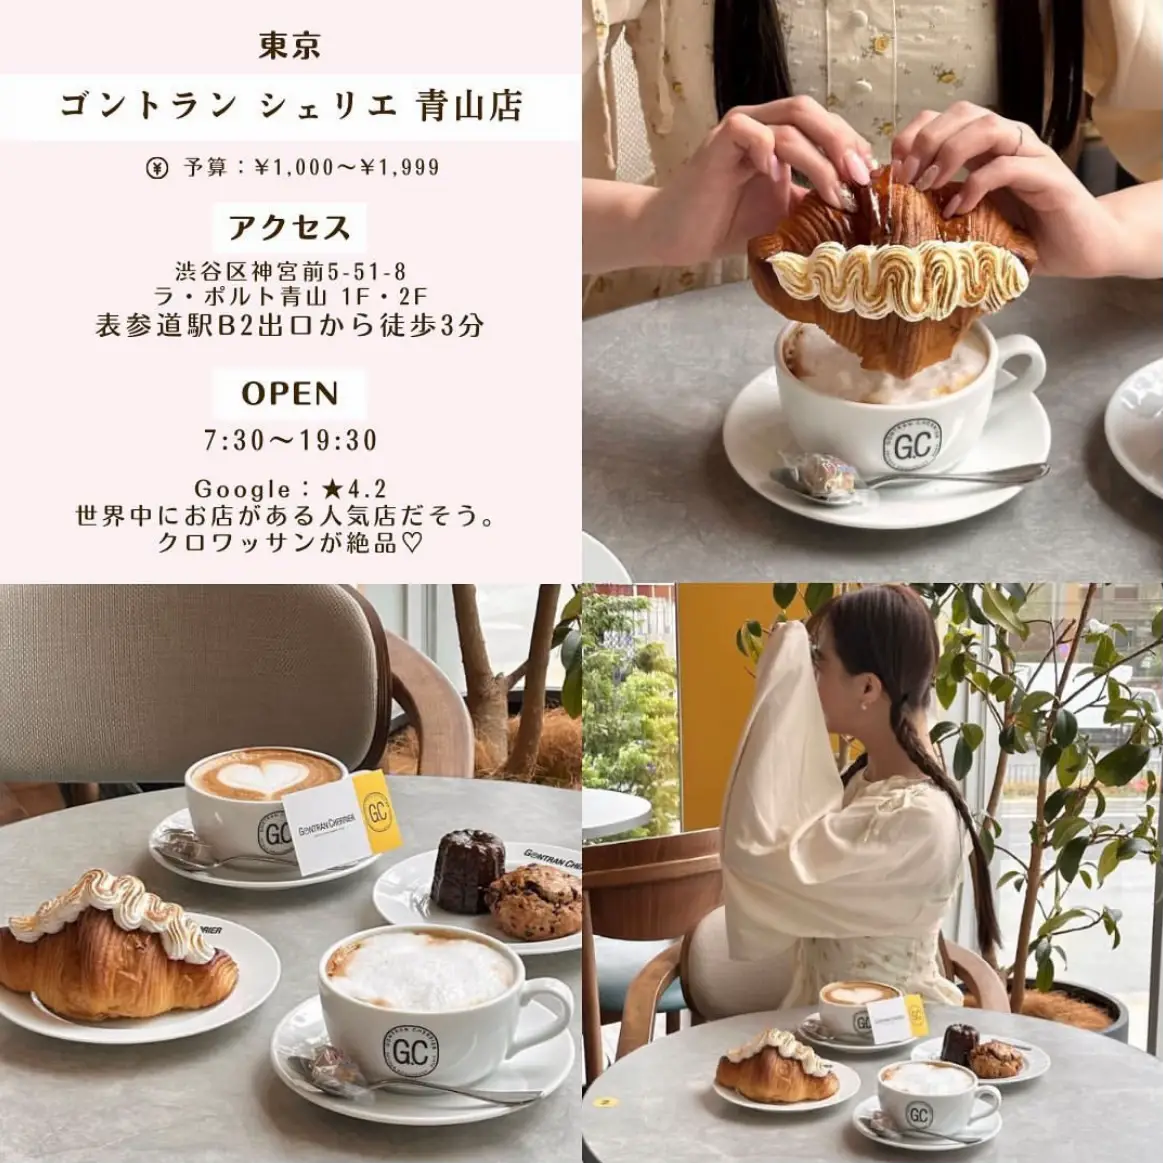 パンが美味しいカフェ渋谷 - Lemon8検索